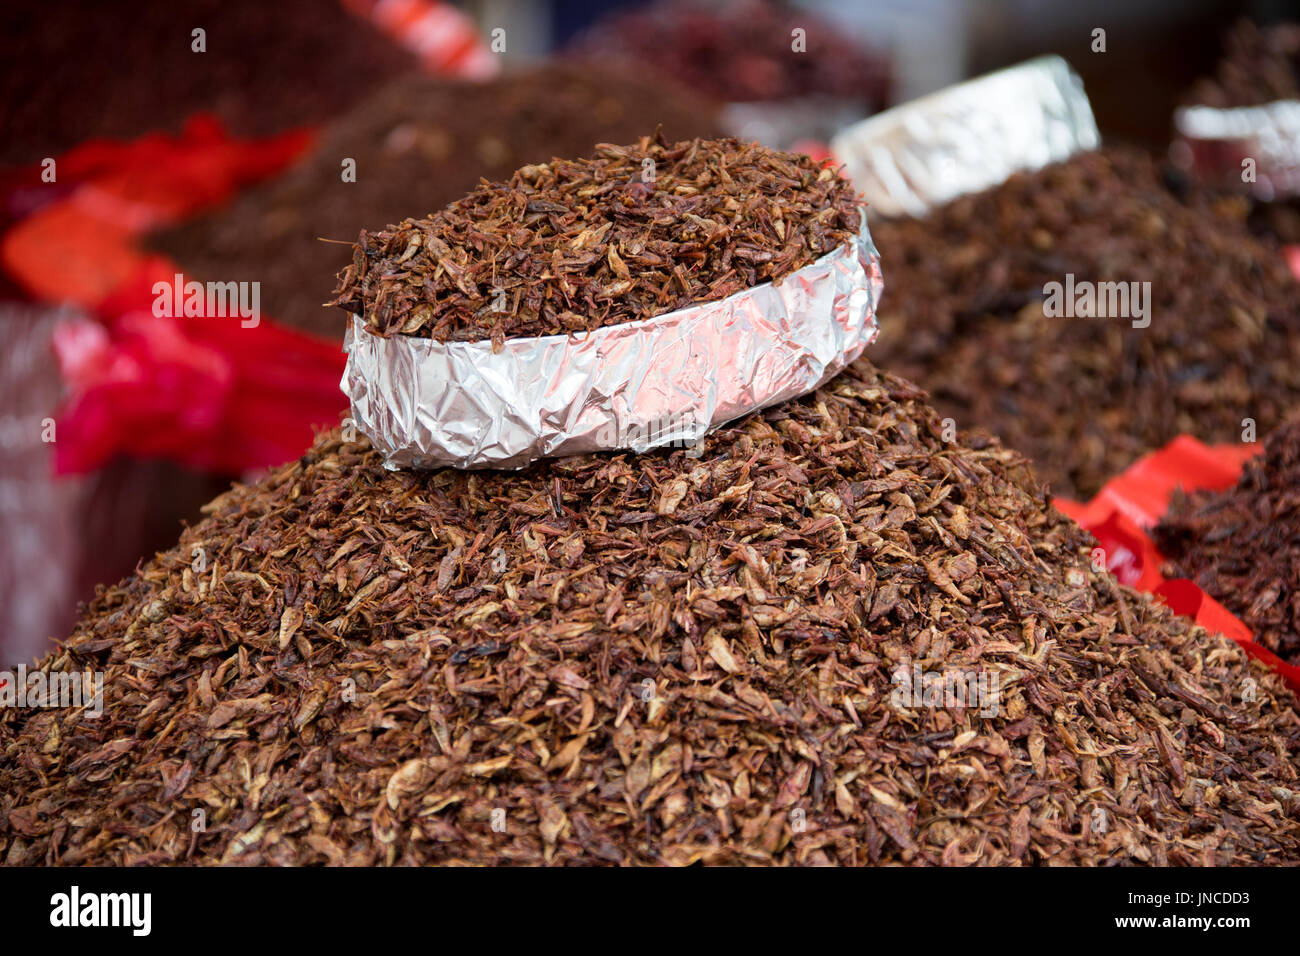 Insectos fritos vendedor en Oaxaca, México Foto de stock